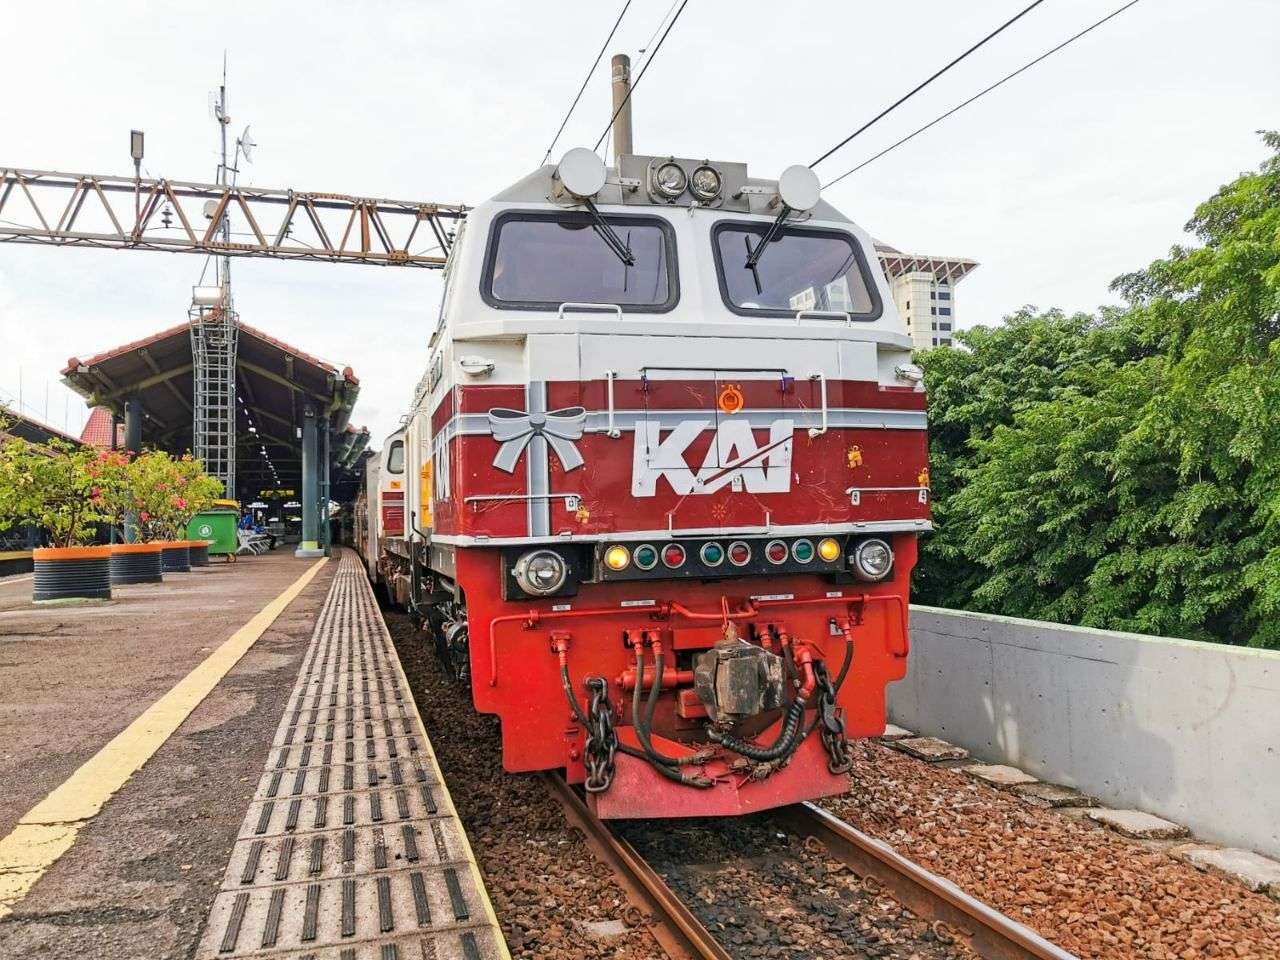 Tiket kereta api untuk libur Natal dan Tahun Baru (Nataru) 2022/2023 telah bisa dipesan secara bertahap sejak 7 November 2022, atau H-45 keberangkatan. (Foto: Dok. PT. KAI)